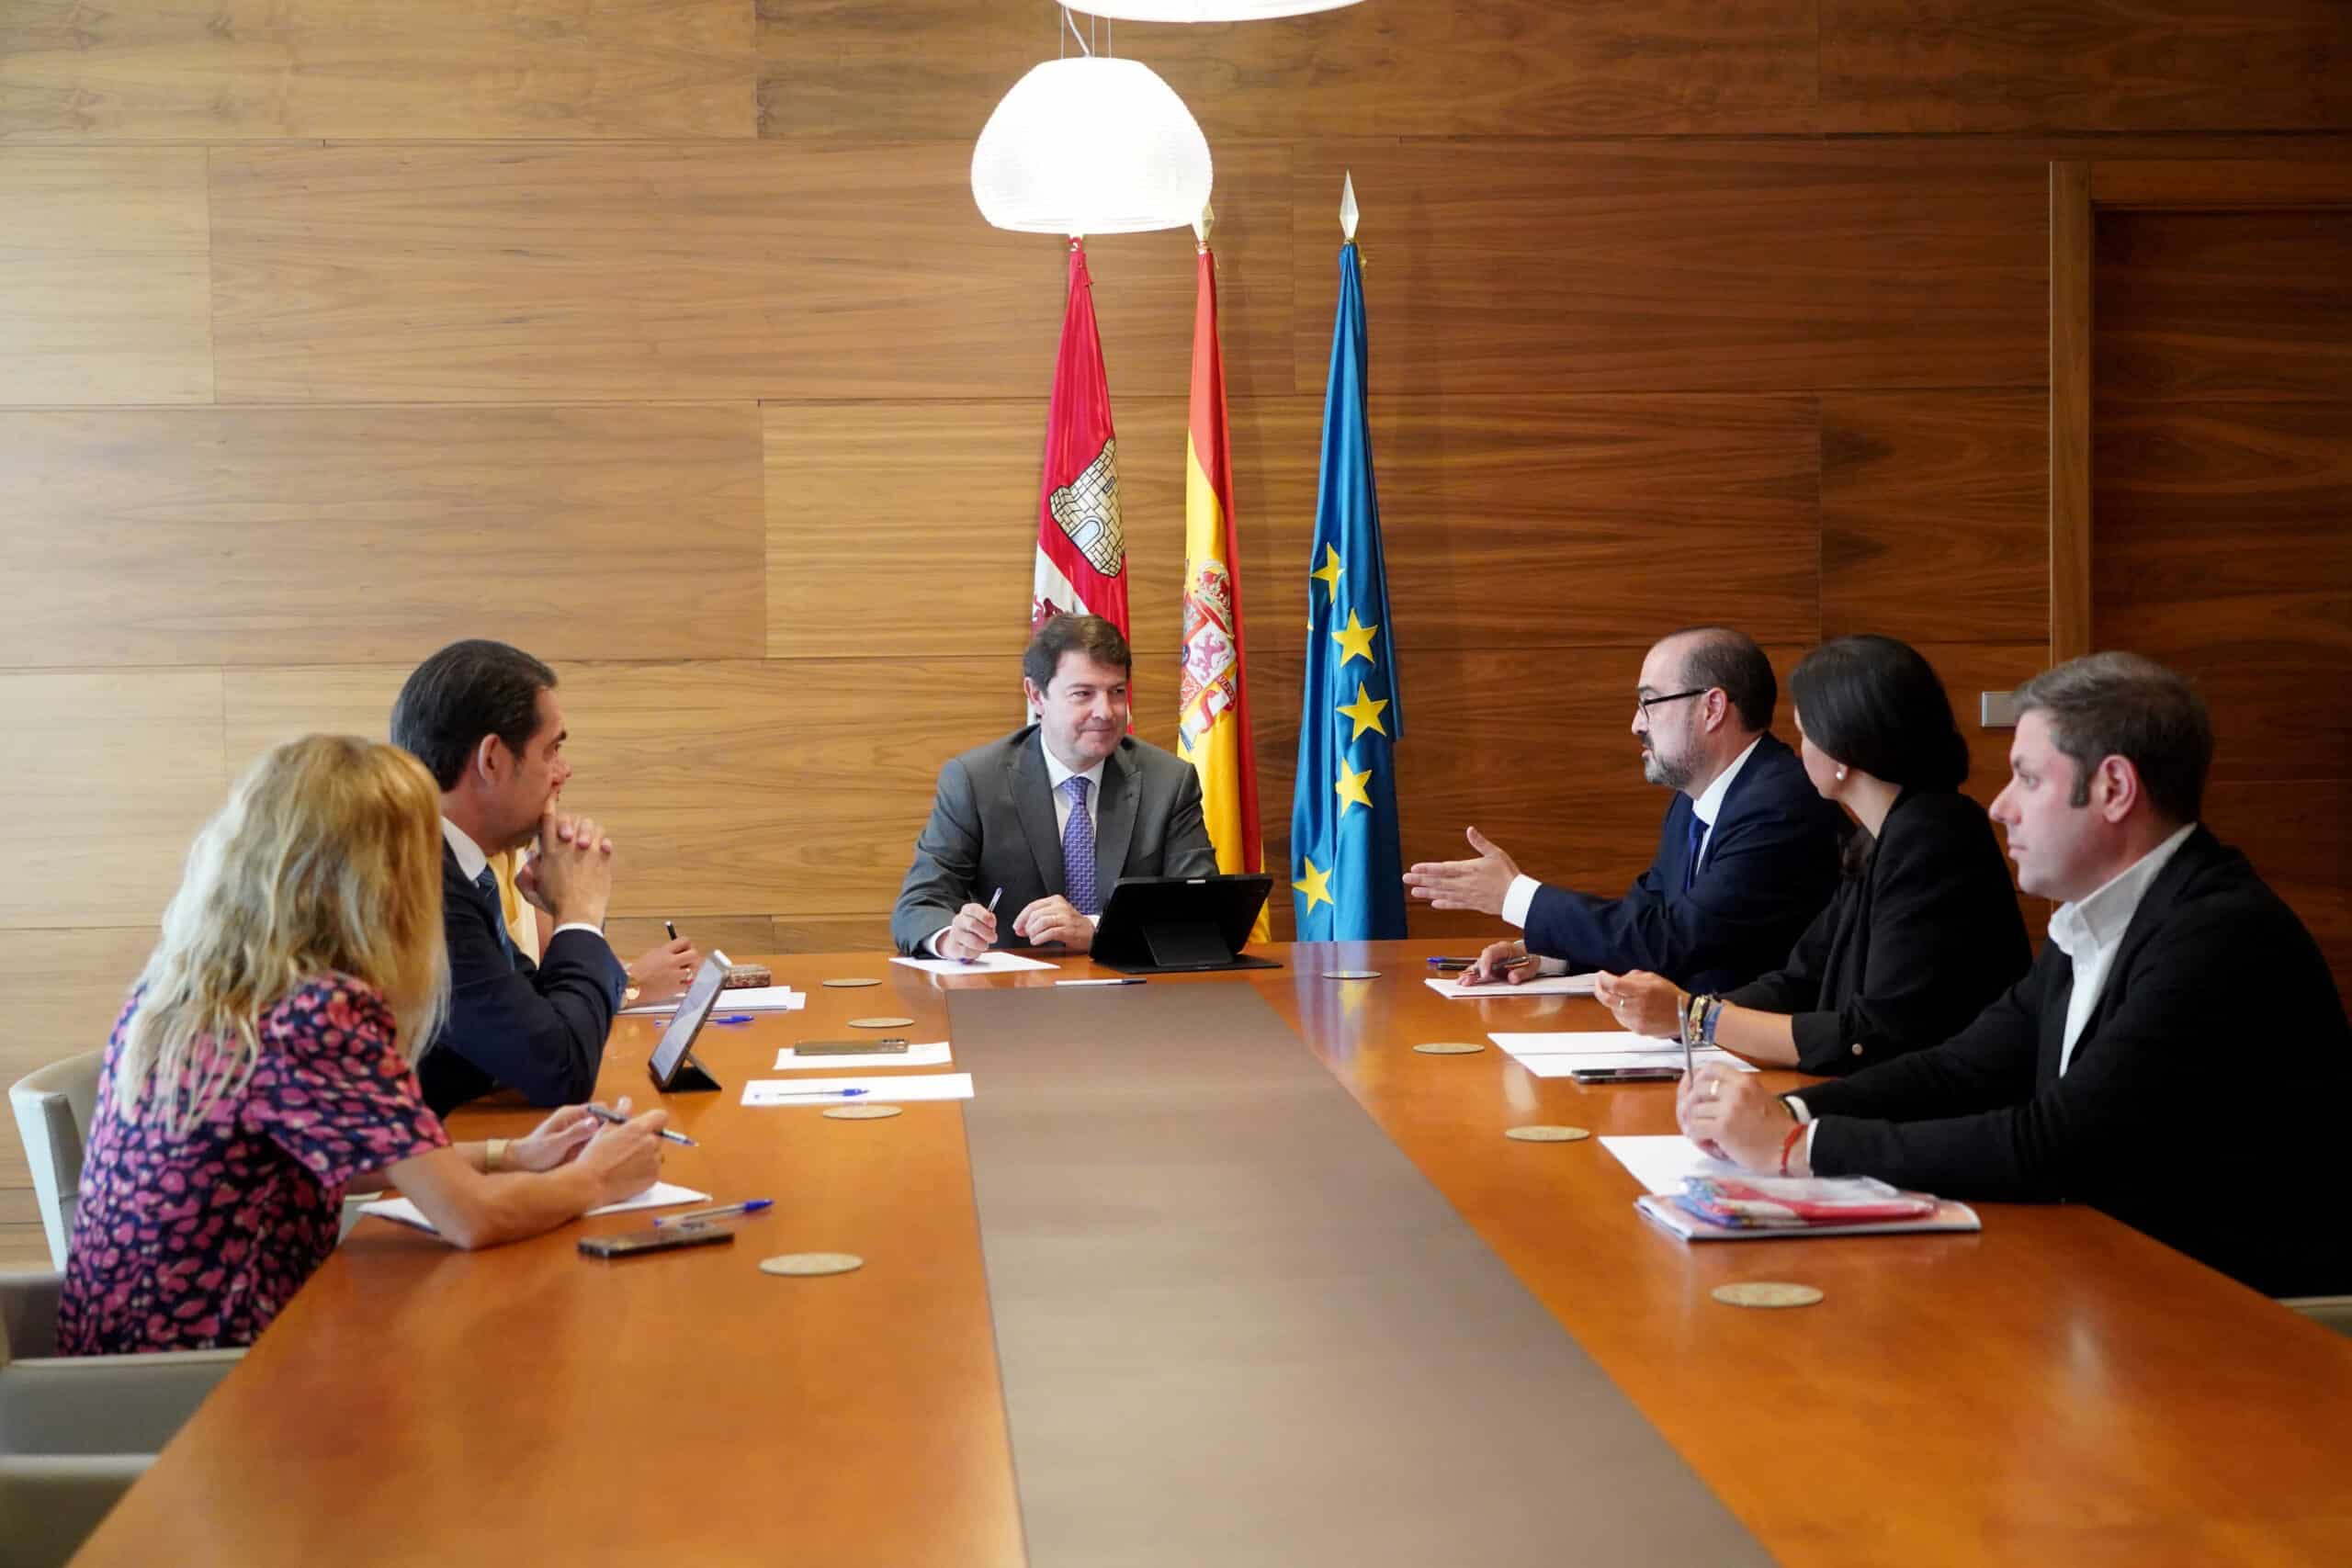 Mañueco compromete el apoyo de la Junta a los polígonos industriales de Ponferrada (León)